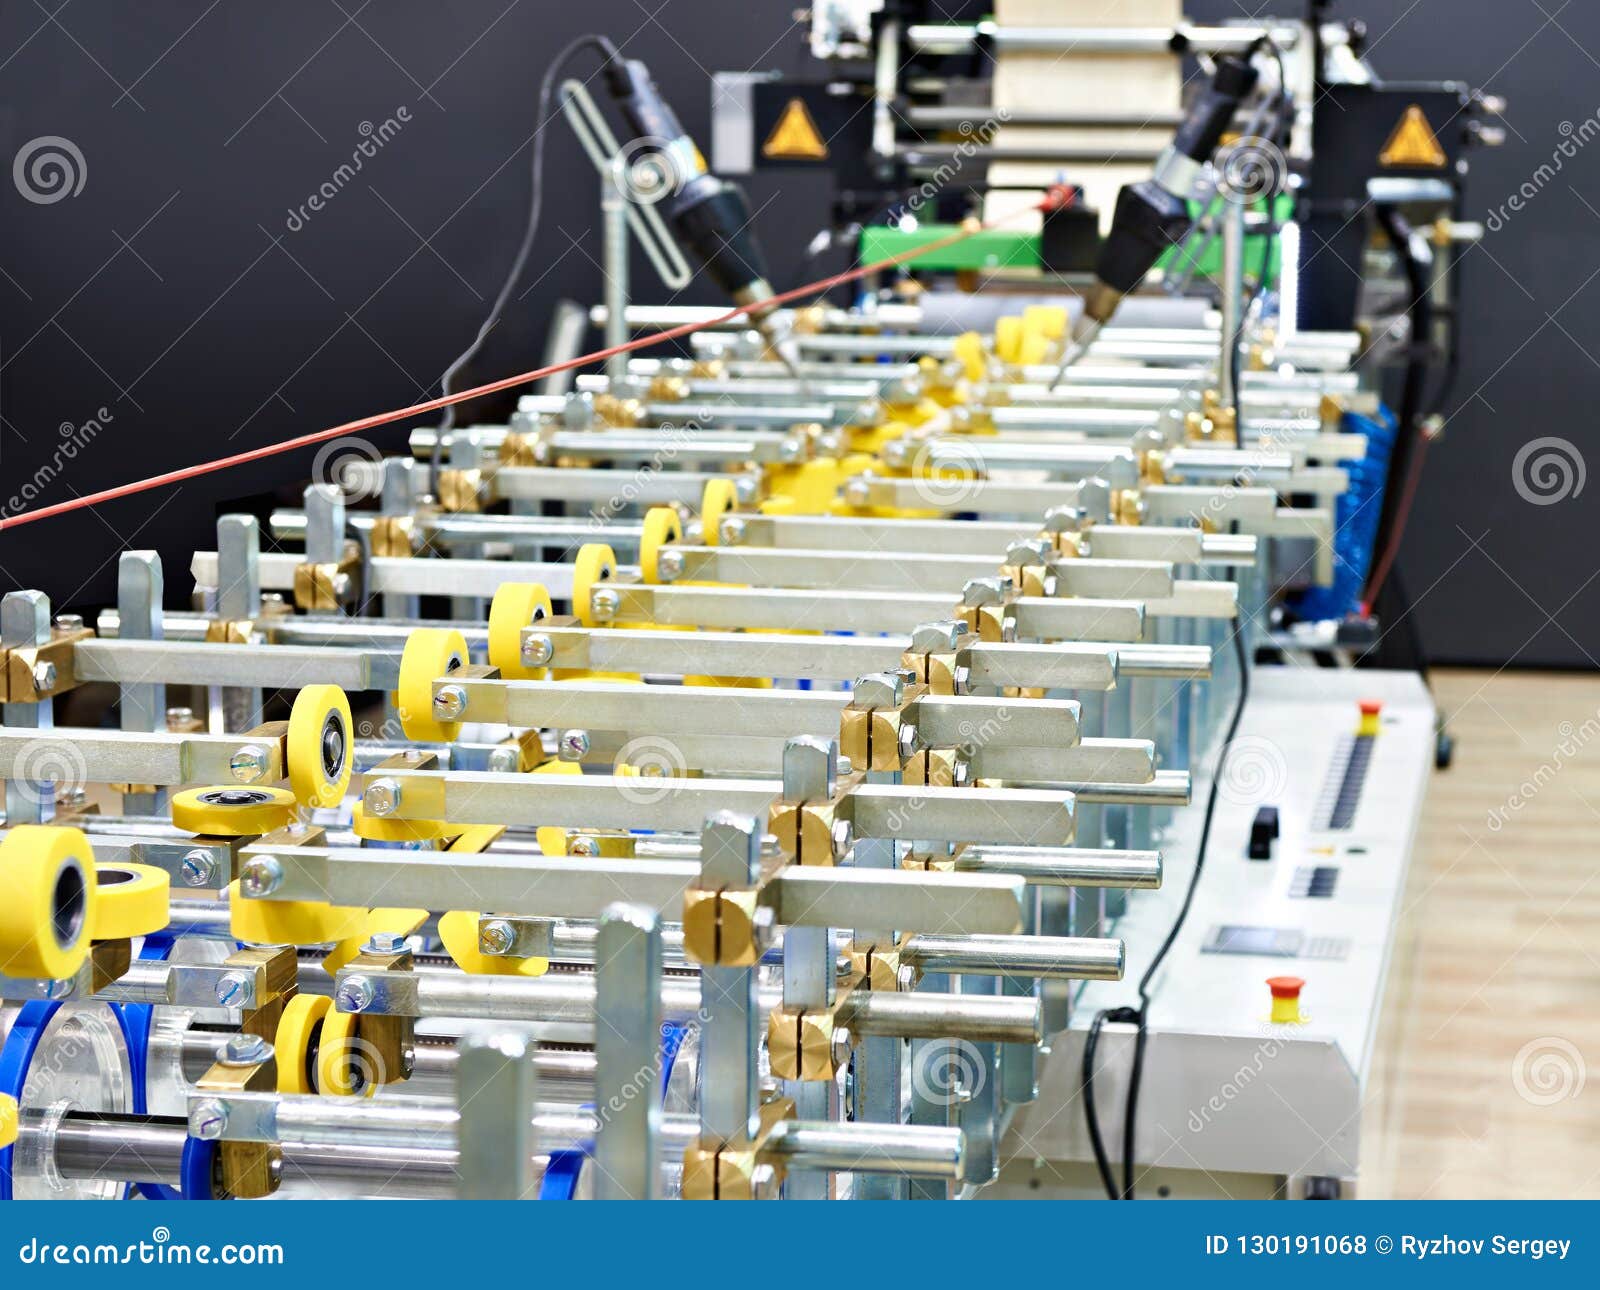 Machine Multi Wrap Laminates Plastic Or Metal Profiles Panels